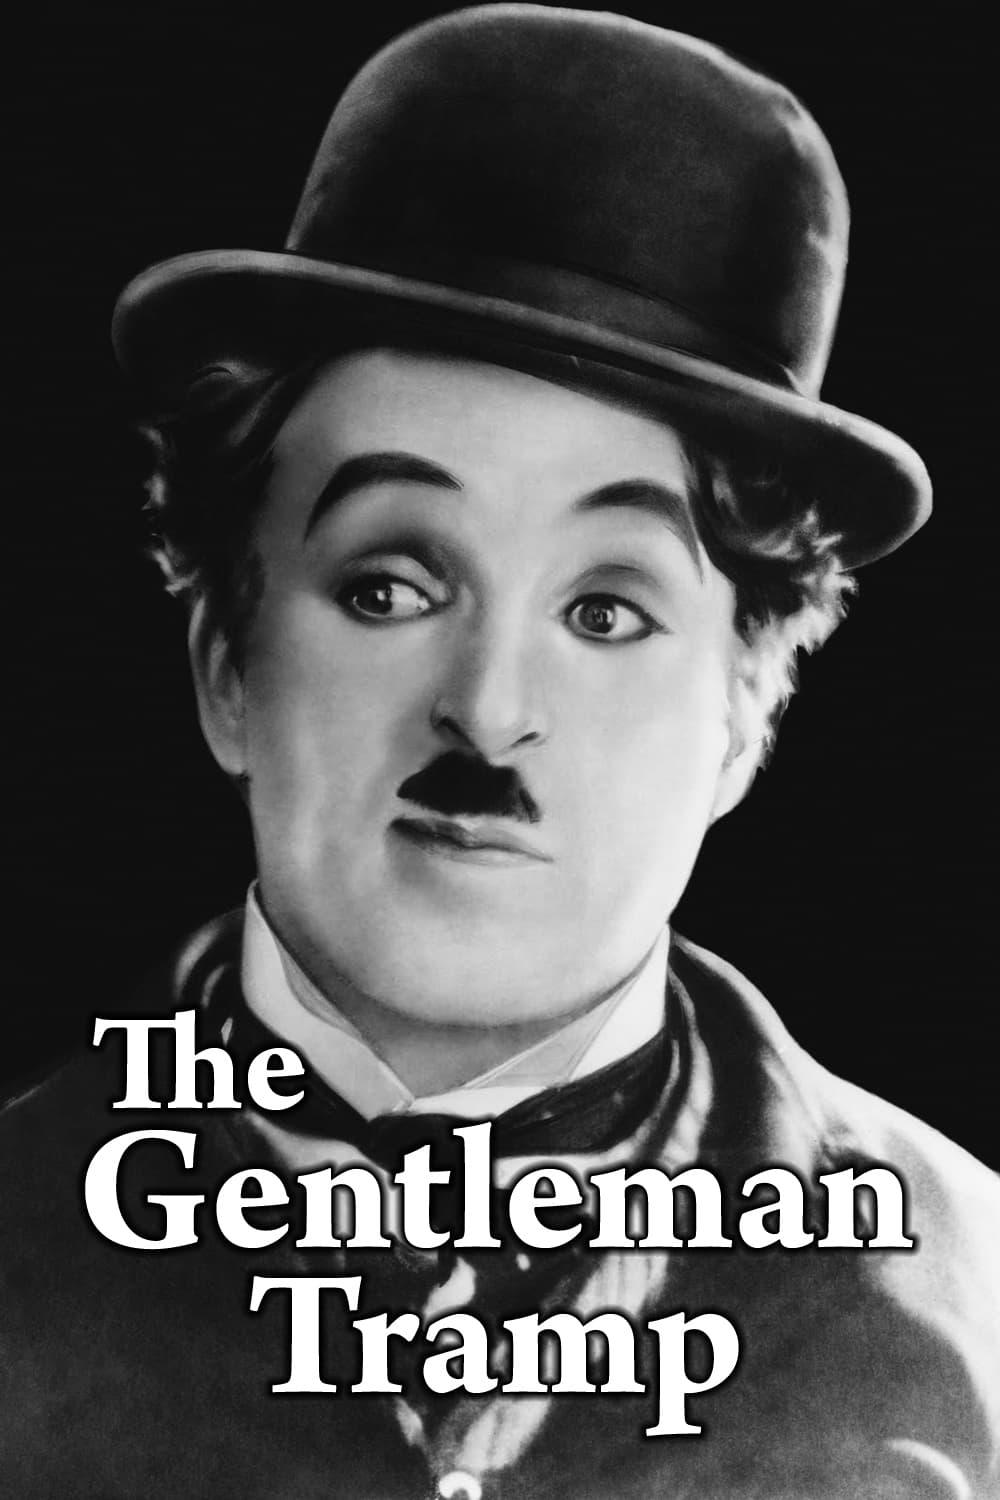 The Gentleman Tramp poster